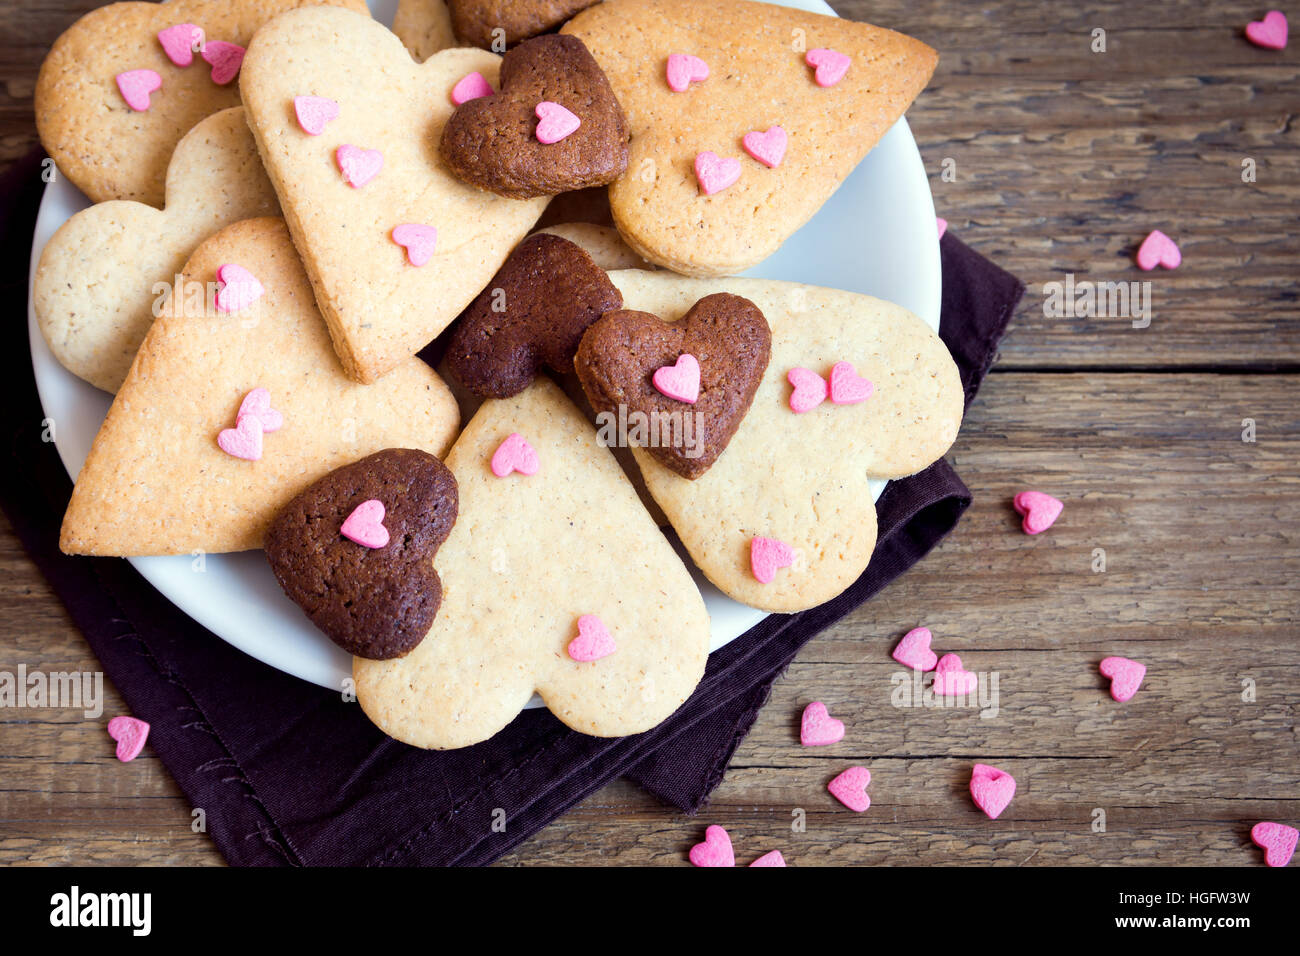 Herzförmige Cookies auf einem hölzernen Hintergrund für den Valentinstag - selbstgemachter festliche Kuchen Buiscuits Cookies, Valentinstag Liebe Konzept Stockfoto